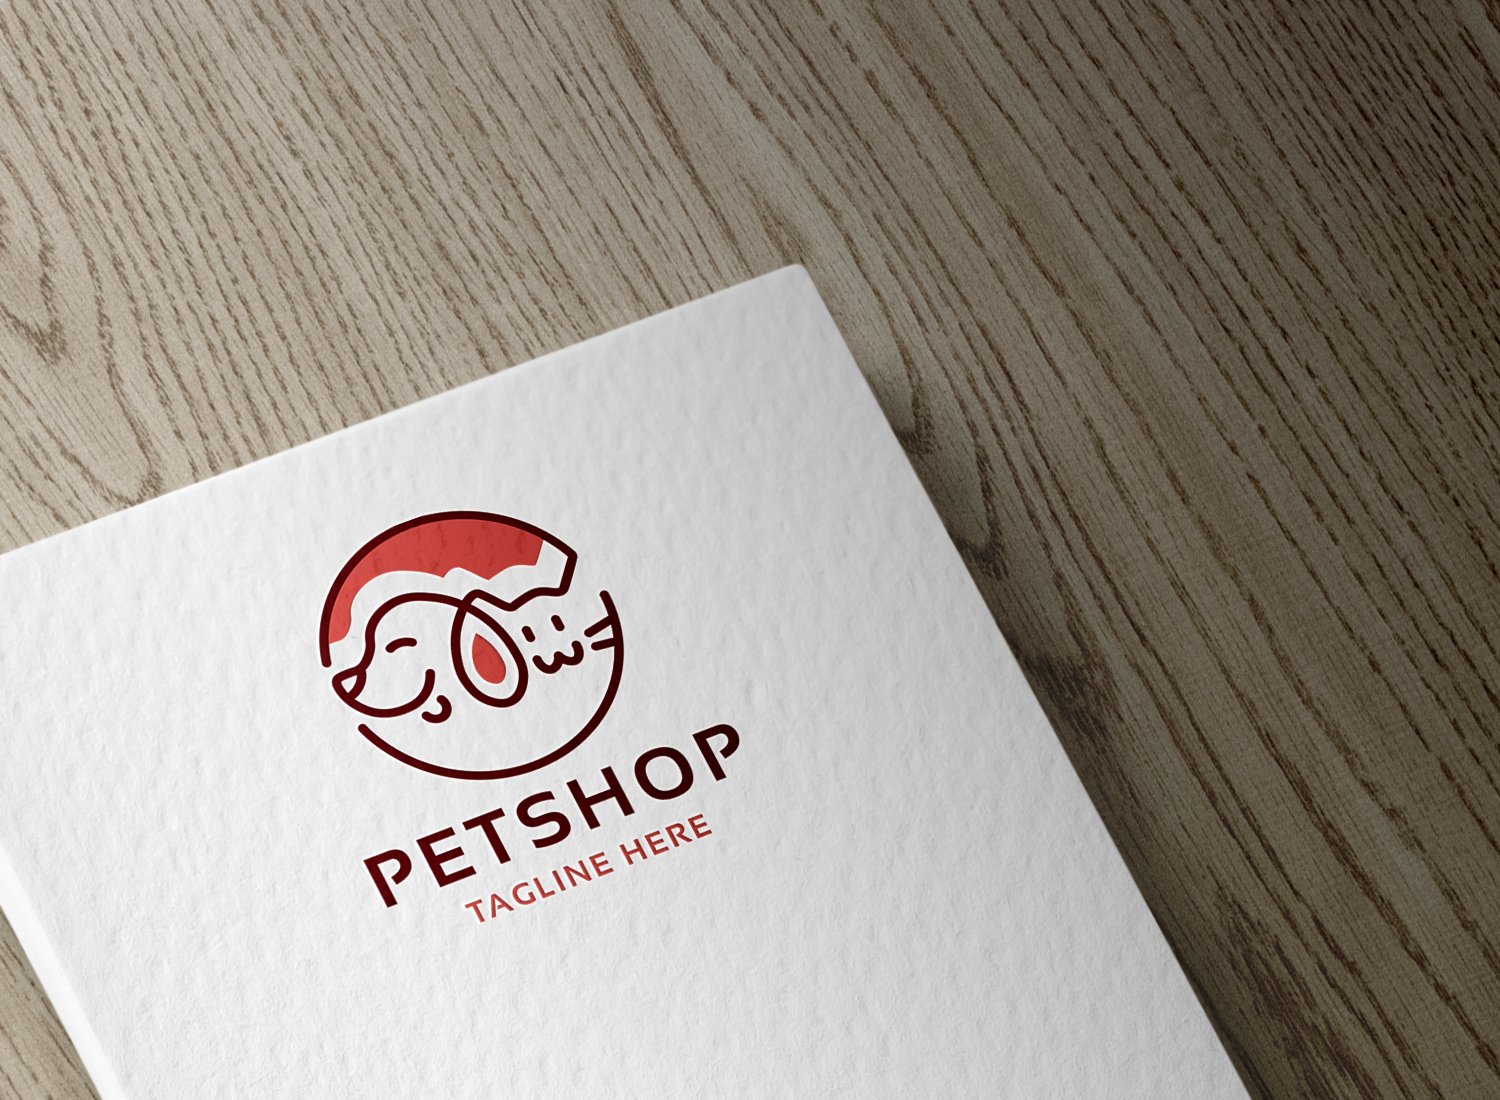 Petshop Logo cover image.